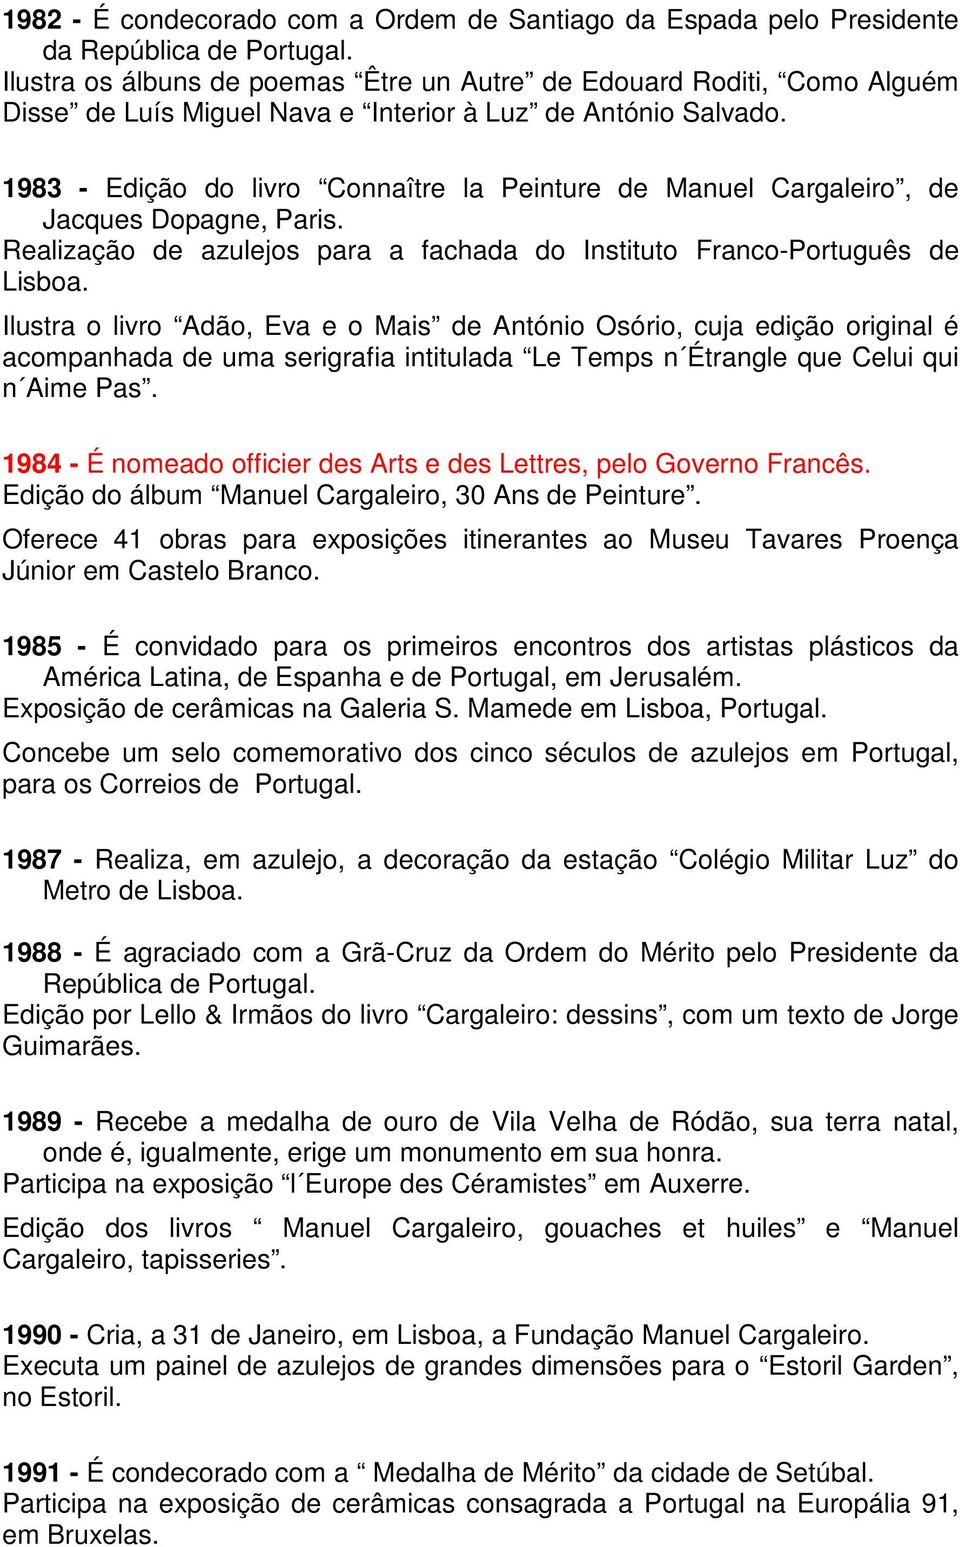 1983 - Edição do livro Connaître la Peinture de Manuel Cargaleiro, de Jacques Dopagne, Paris. Realização de azulejos para a fachada do Instituto Franco-Português de Lisboa.